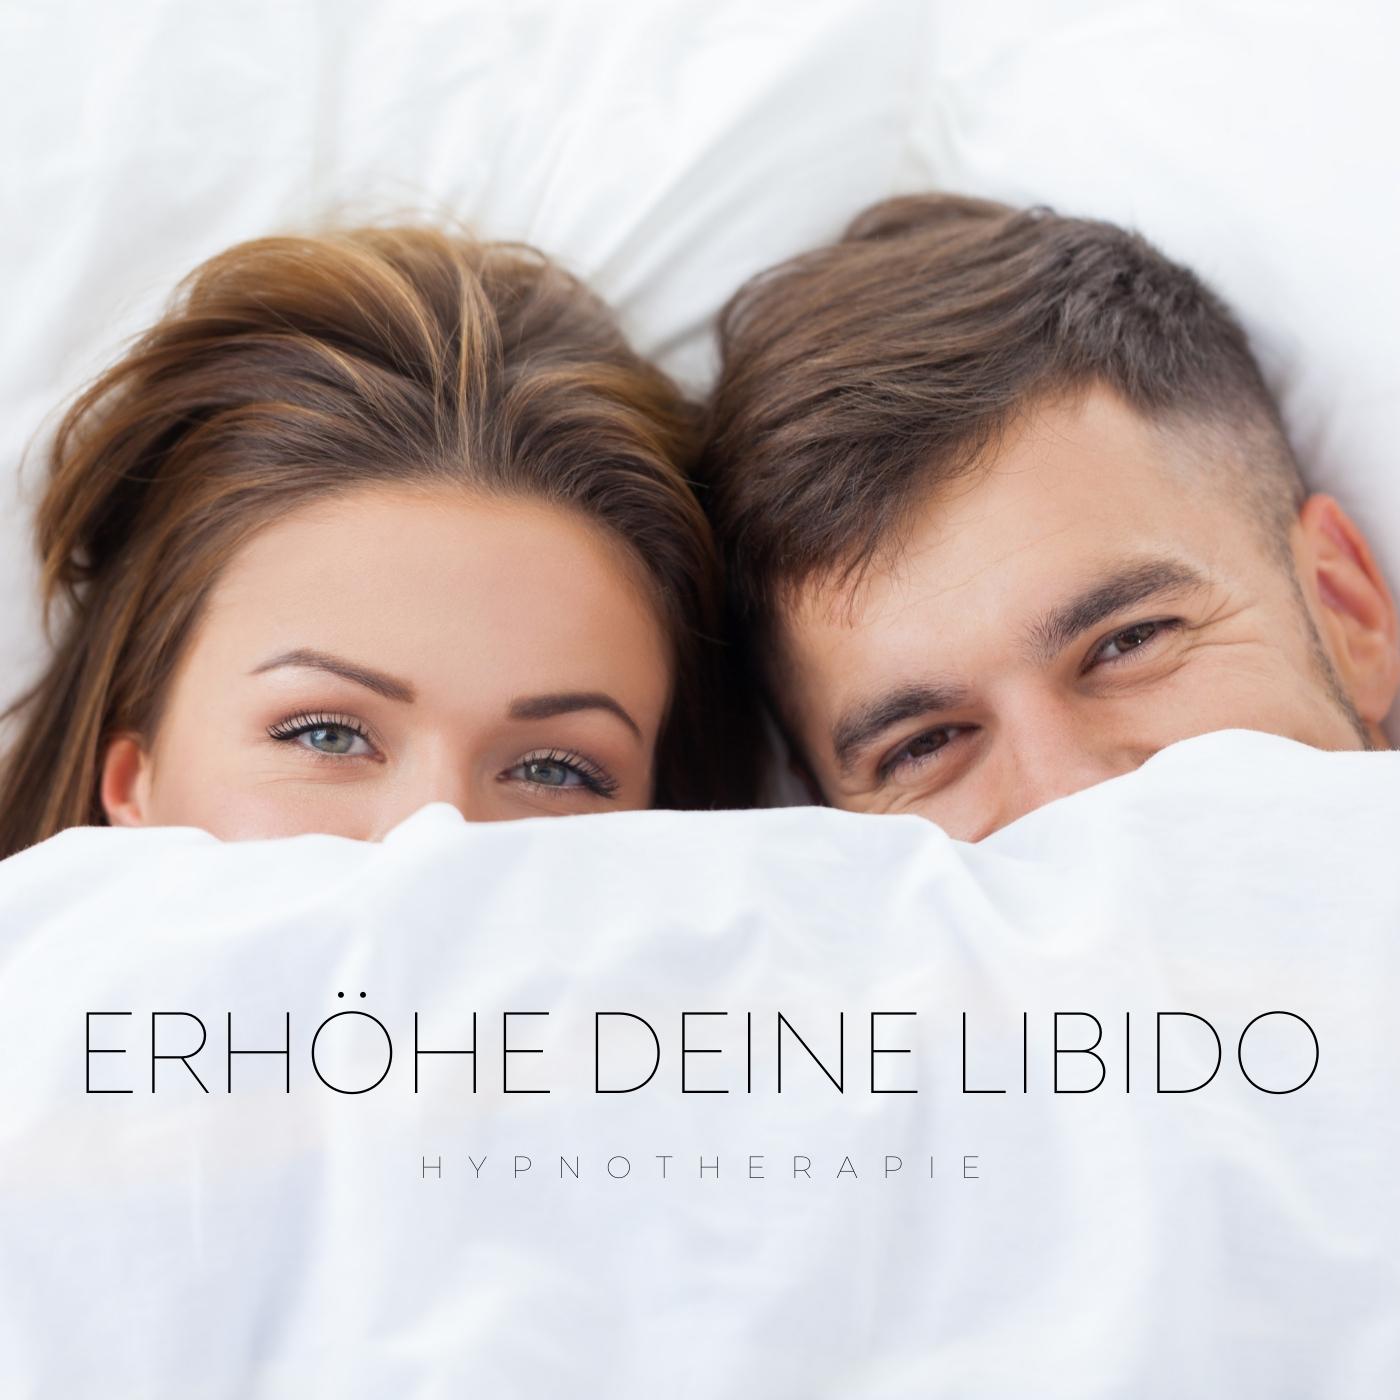 Steigern Sie ihre Libido - Hypnosetherapie (Sexualtrieb für Sie und Ihn)